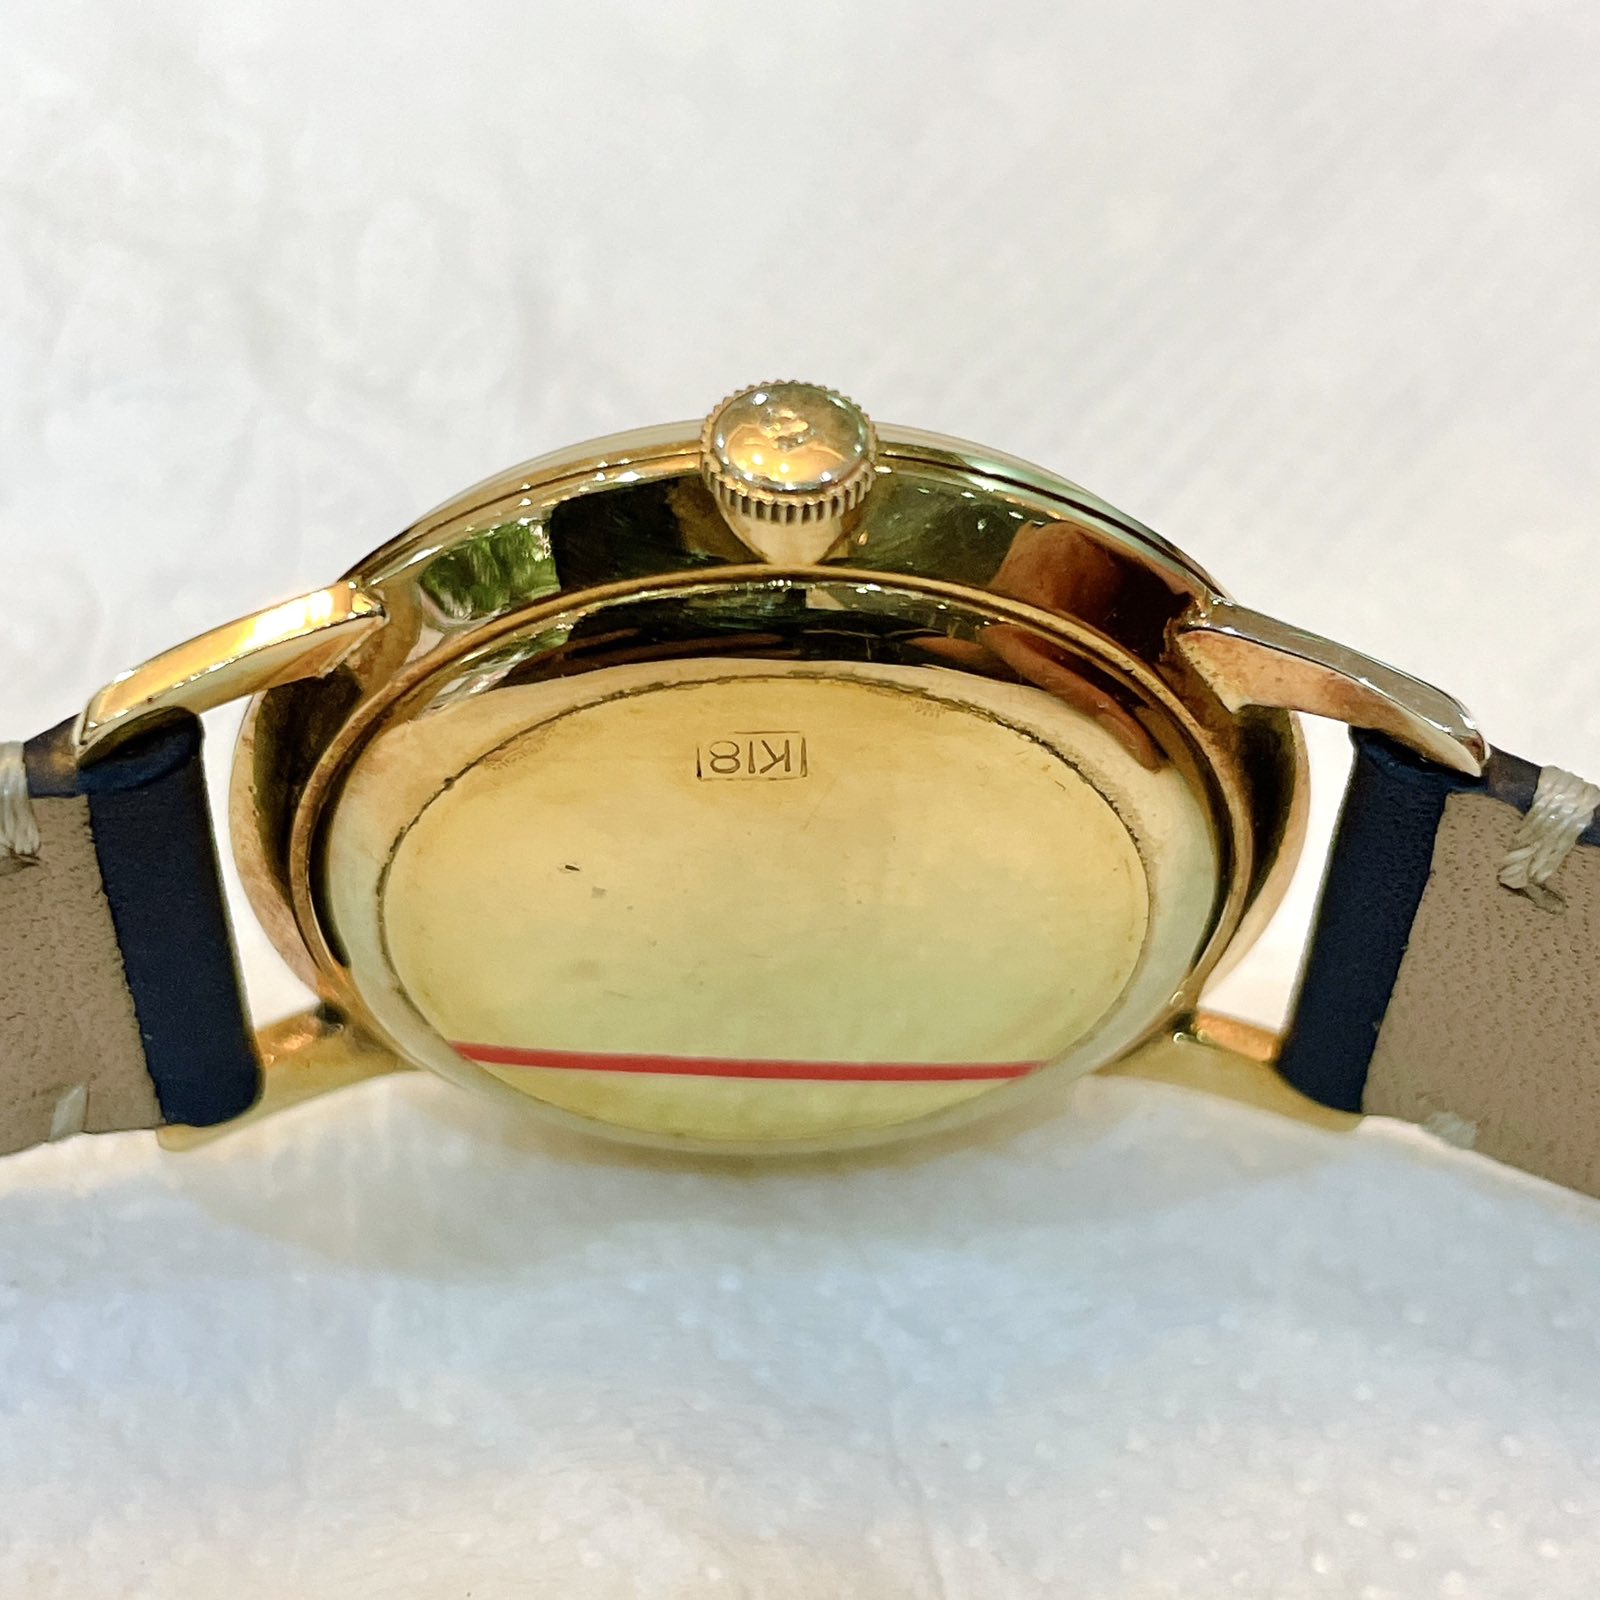 Đồng hồ cổ Seiko lord mavel lên dây siêu mỏng vàng đúc 18k chính hãng Nhật Bản